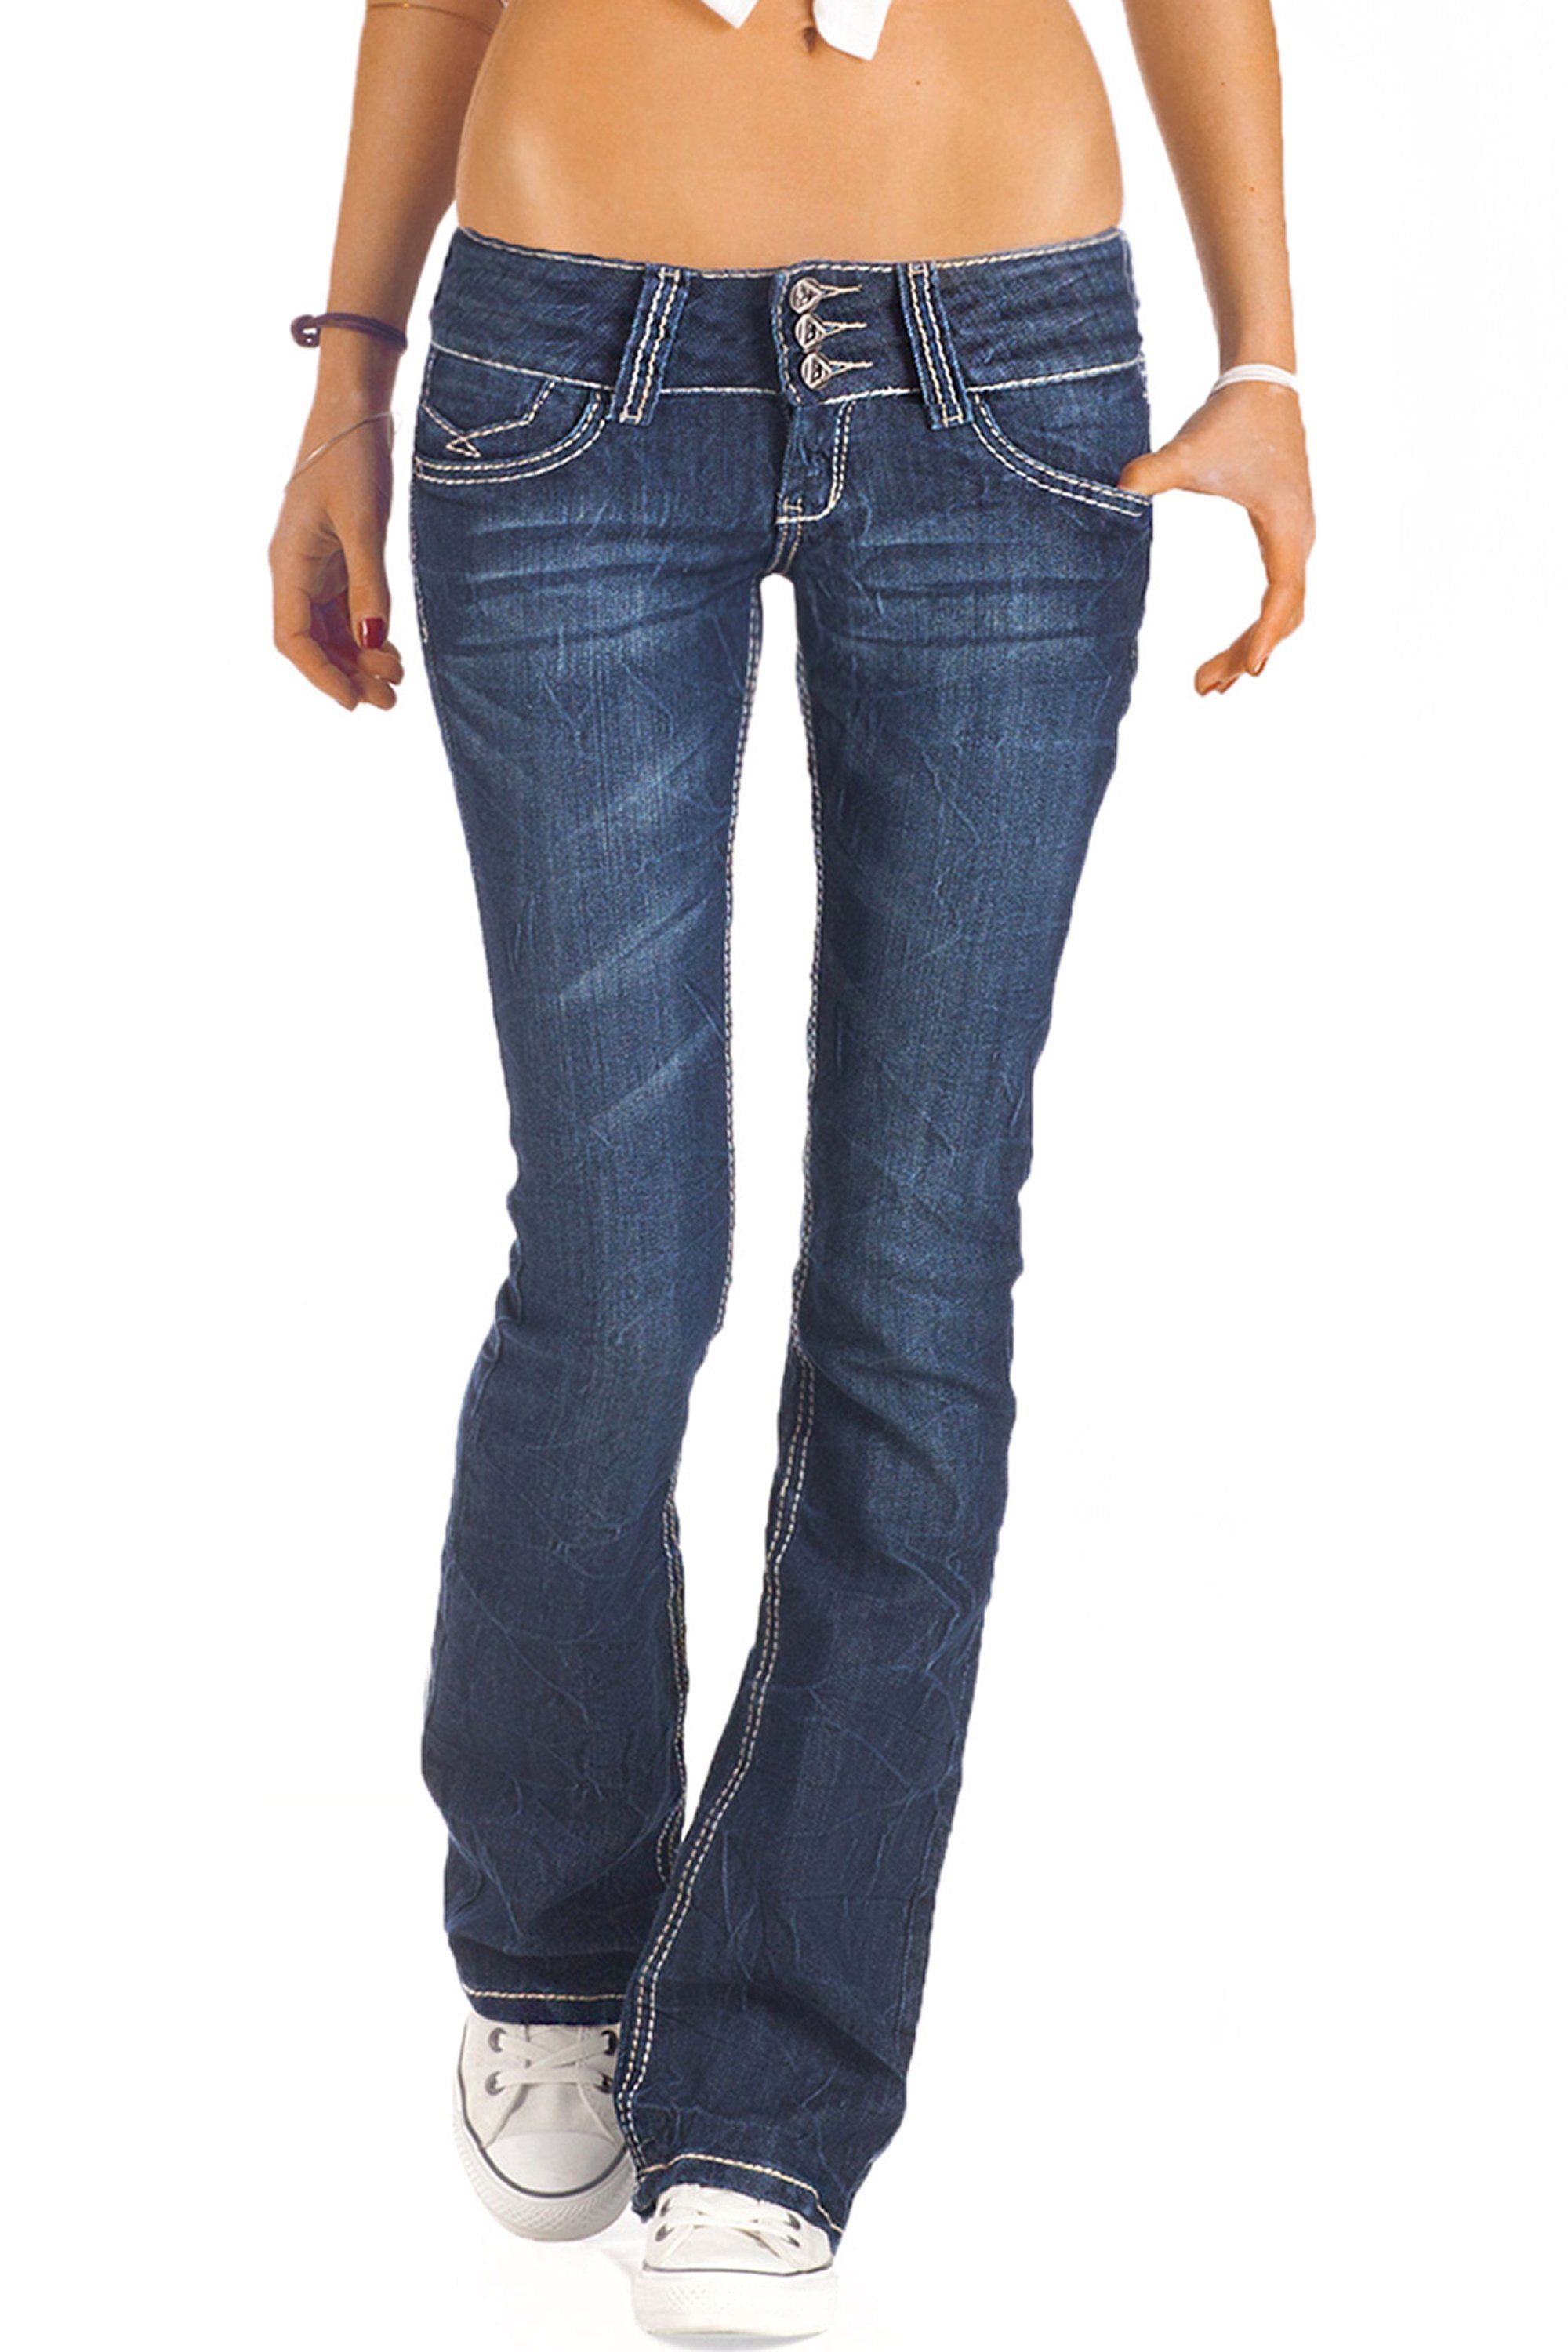 be Bootcut-Jeans ausgestellte j73e waist low styled Hüfthosen Damenjeans,